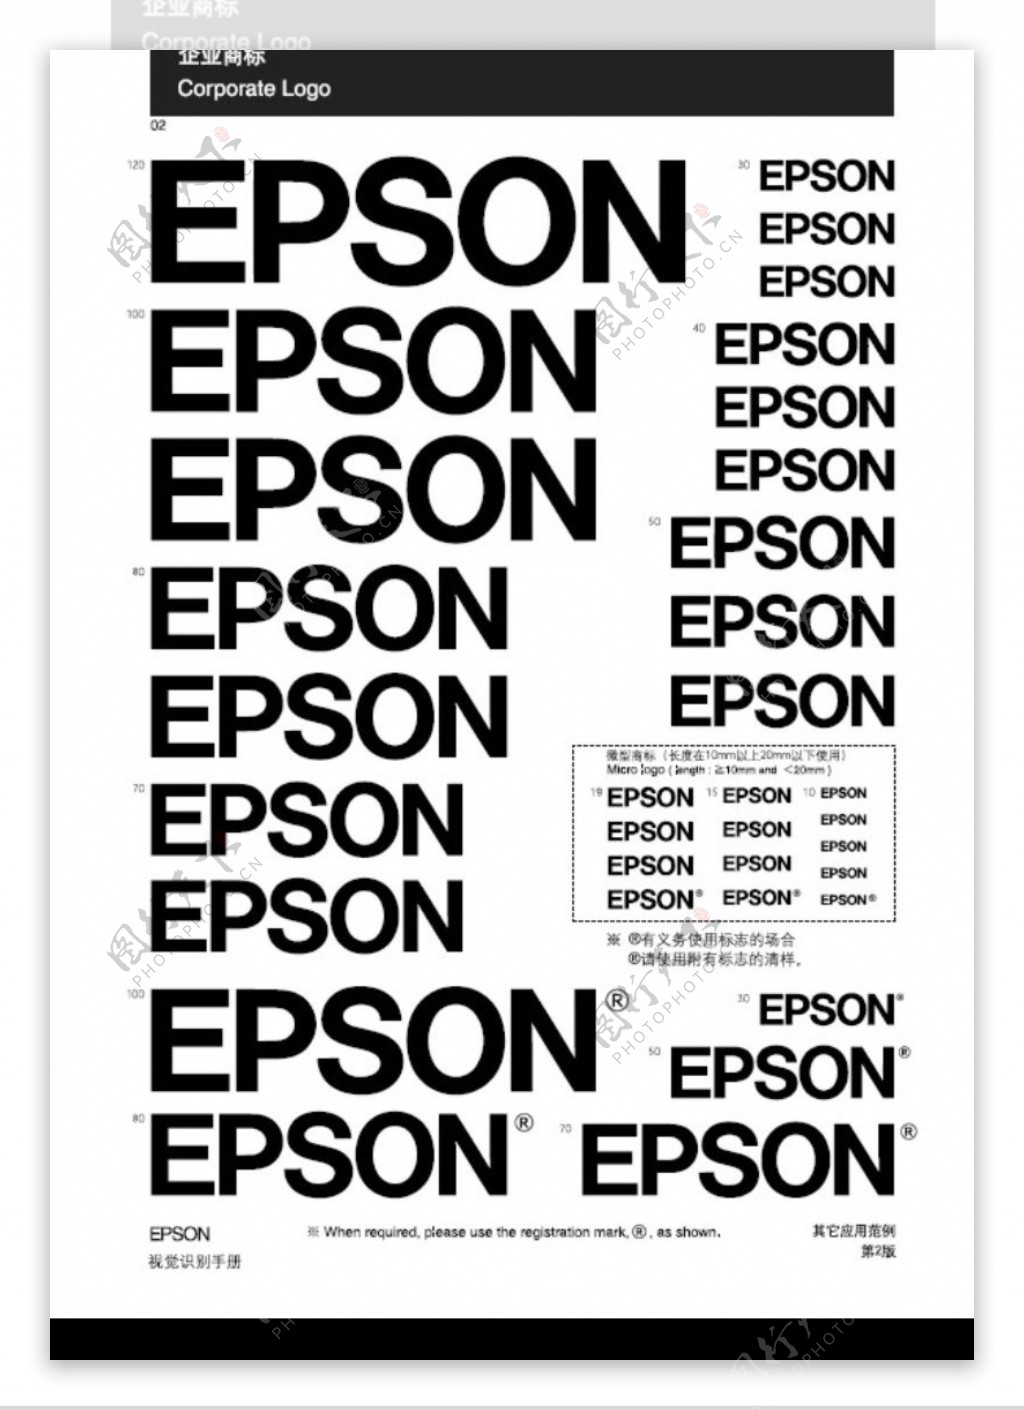 EPSON0064